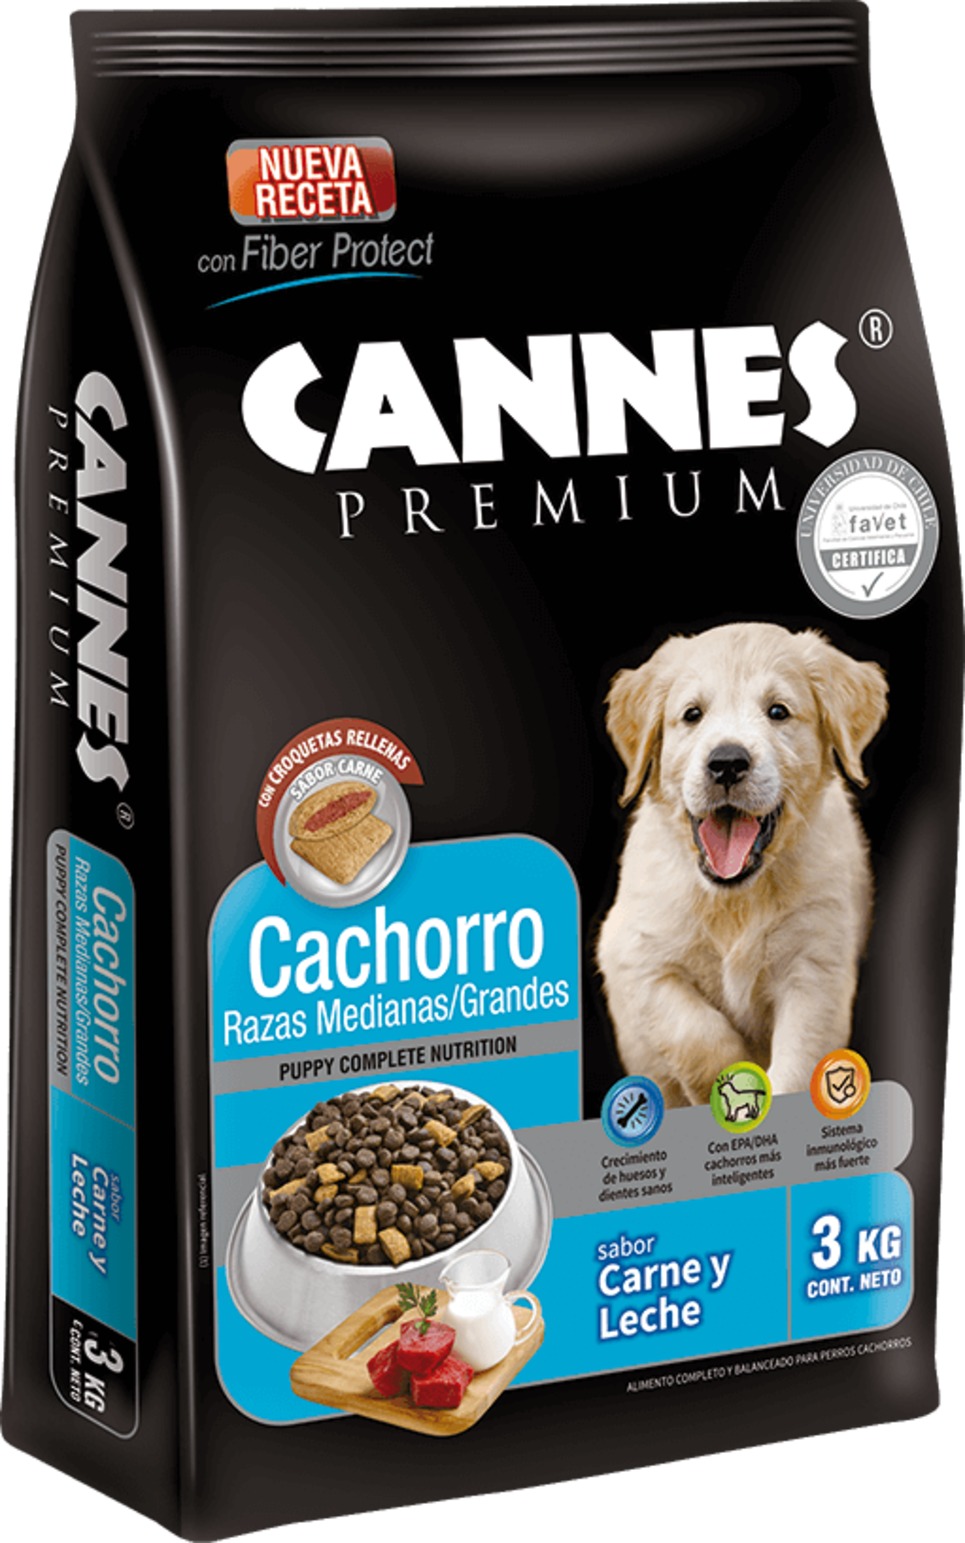 superávit Secretar Reunión Alerta de Seguridad: Alimentos para perros Cannes y Charly, años 2019-2020  - SERNAC: Información de mercados y productos